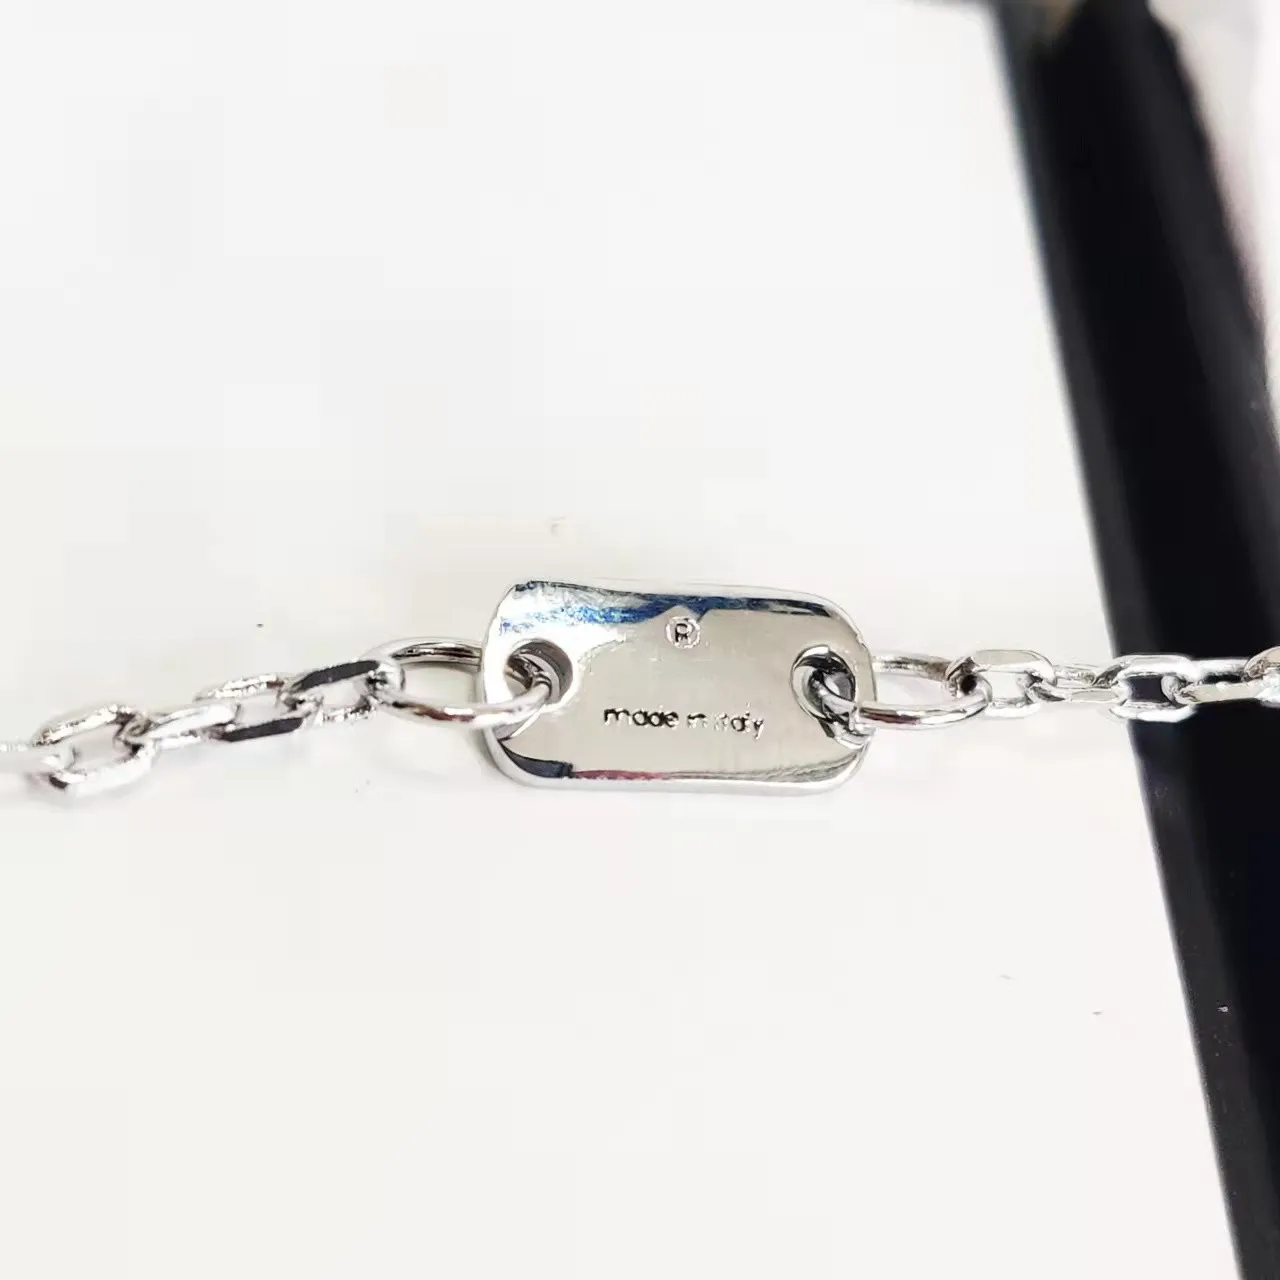 Designer pulseira corrente silverstar presente borboleta pulseiras top correntes moda jóias fornecimento232q